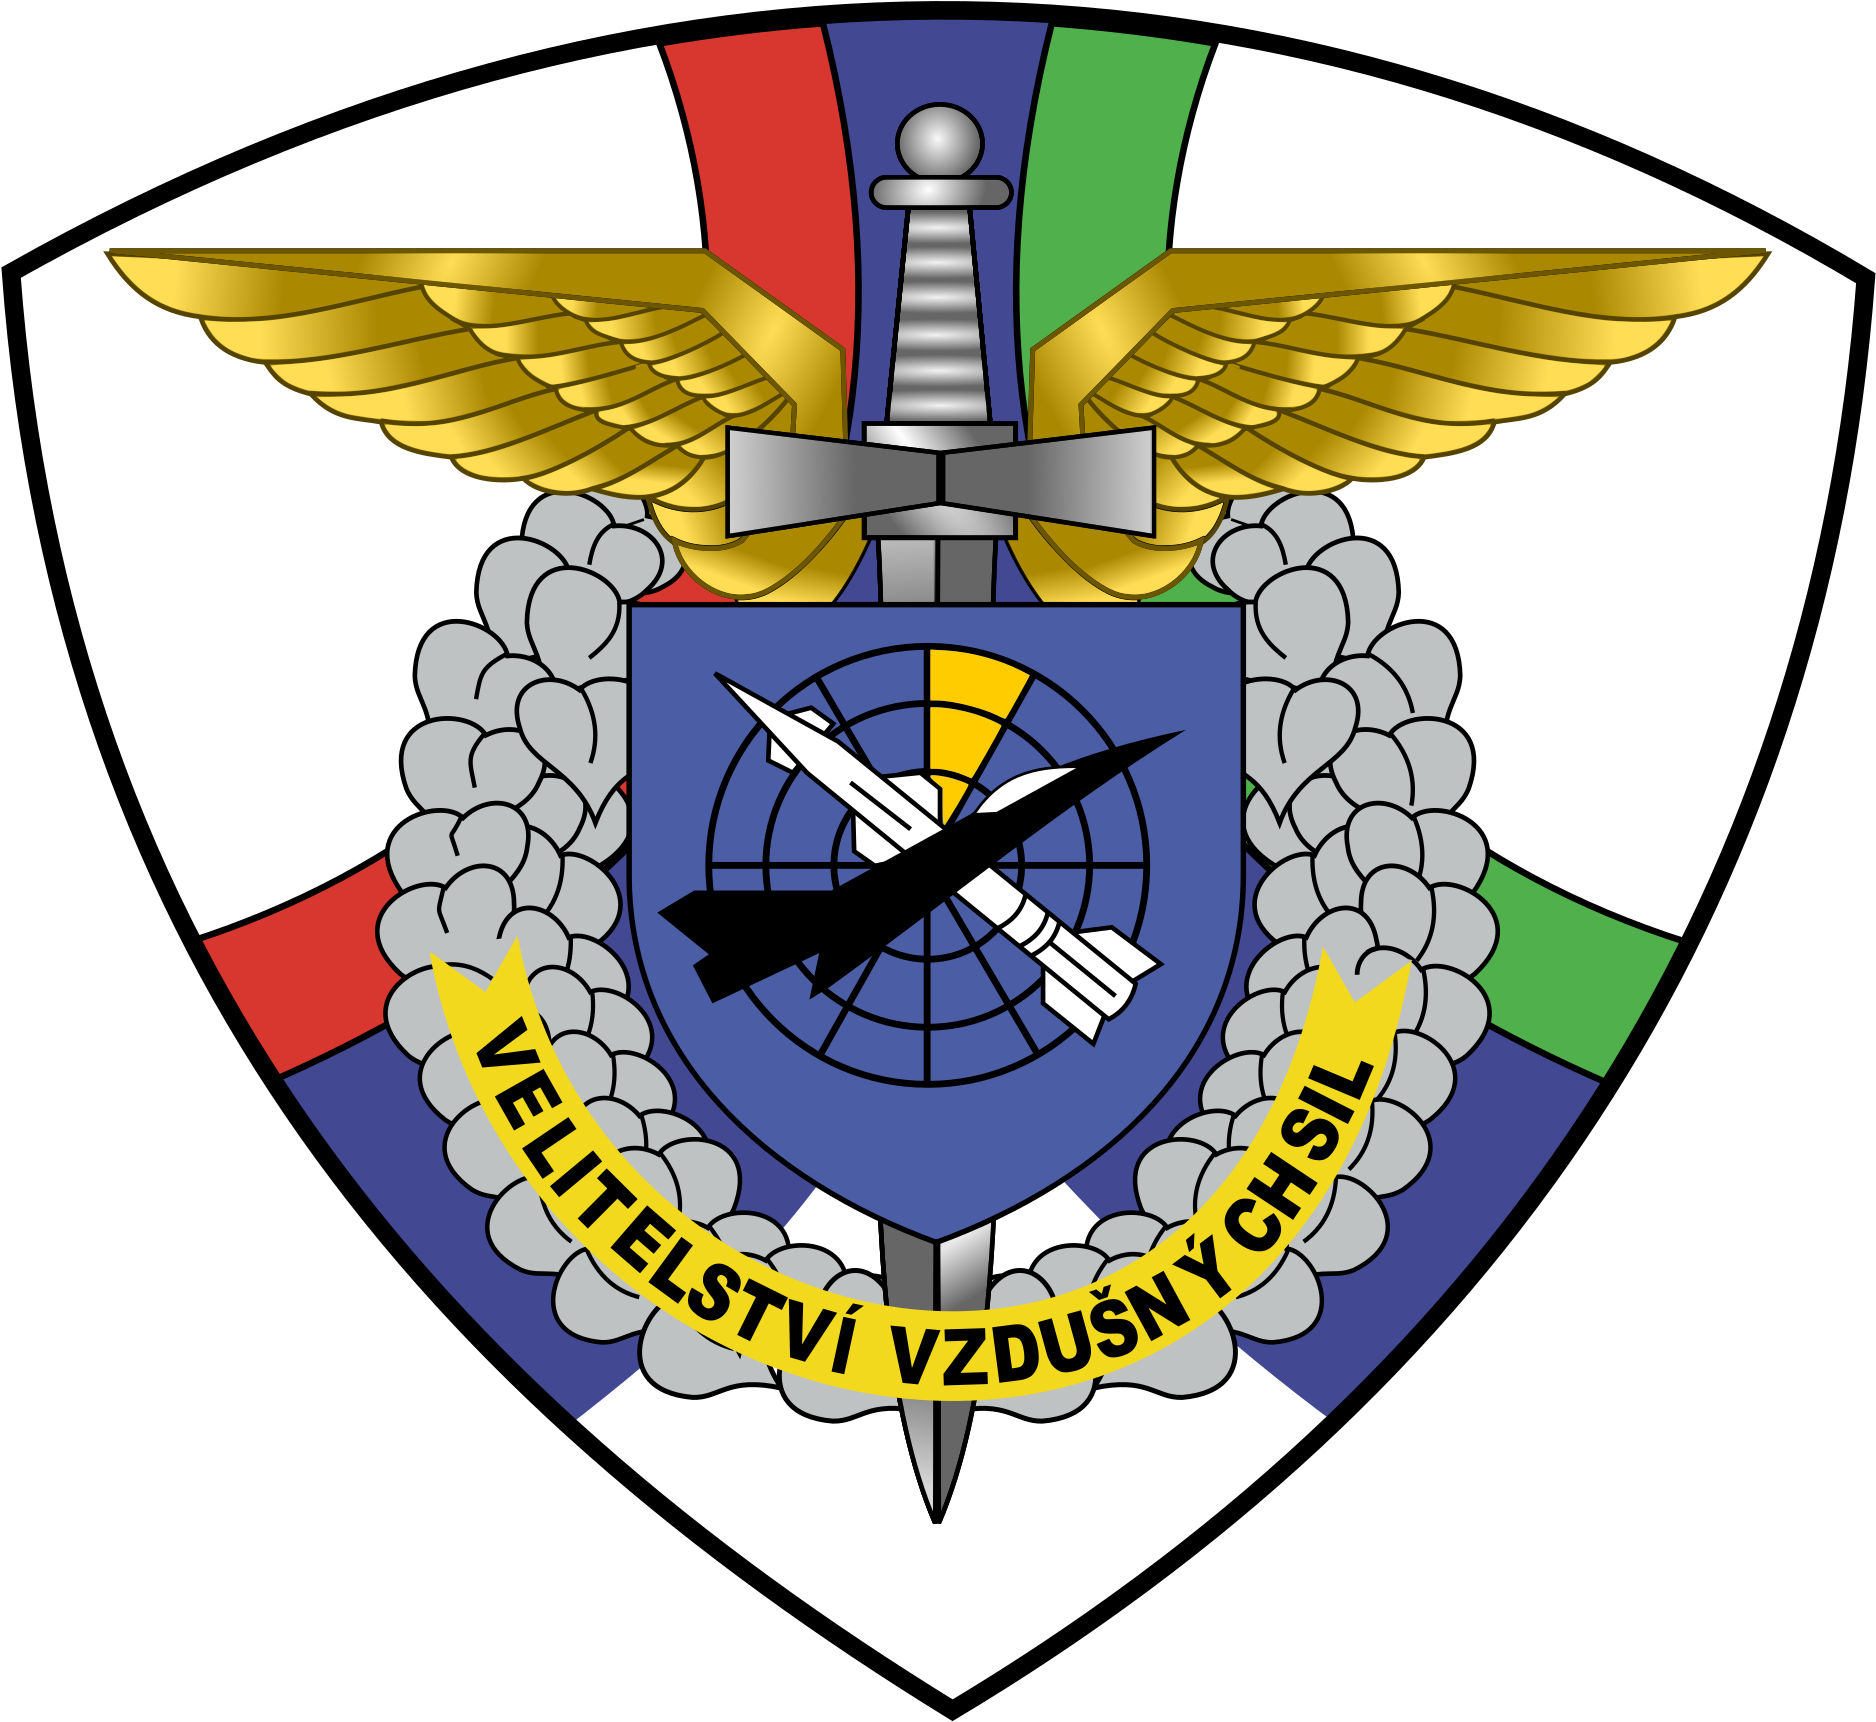 Czechoslovak Air Force Emblem - Czech Air Force (2000x1834)